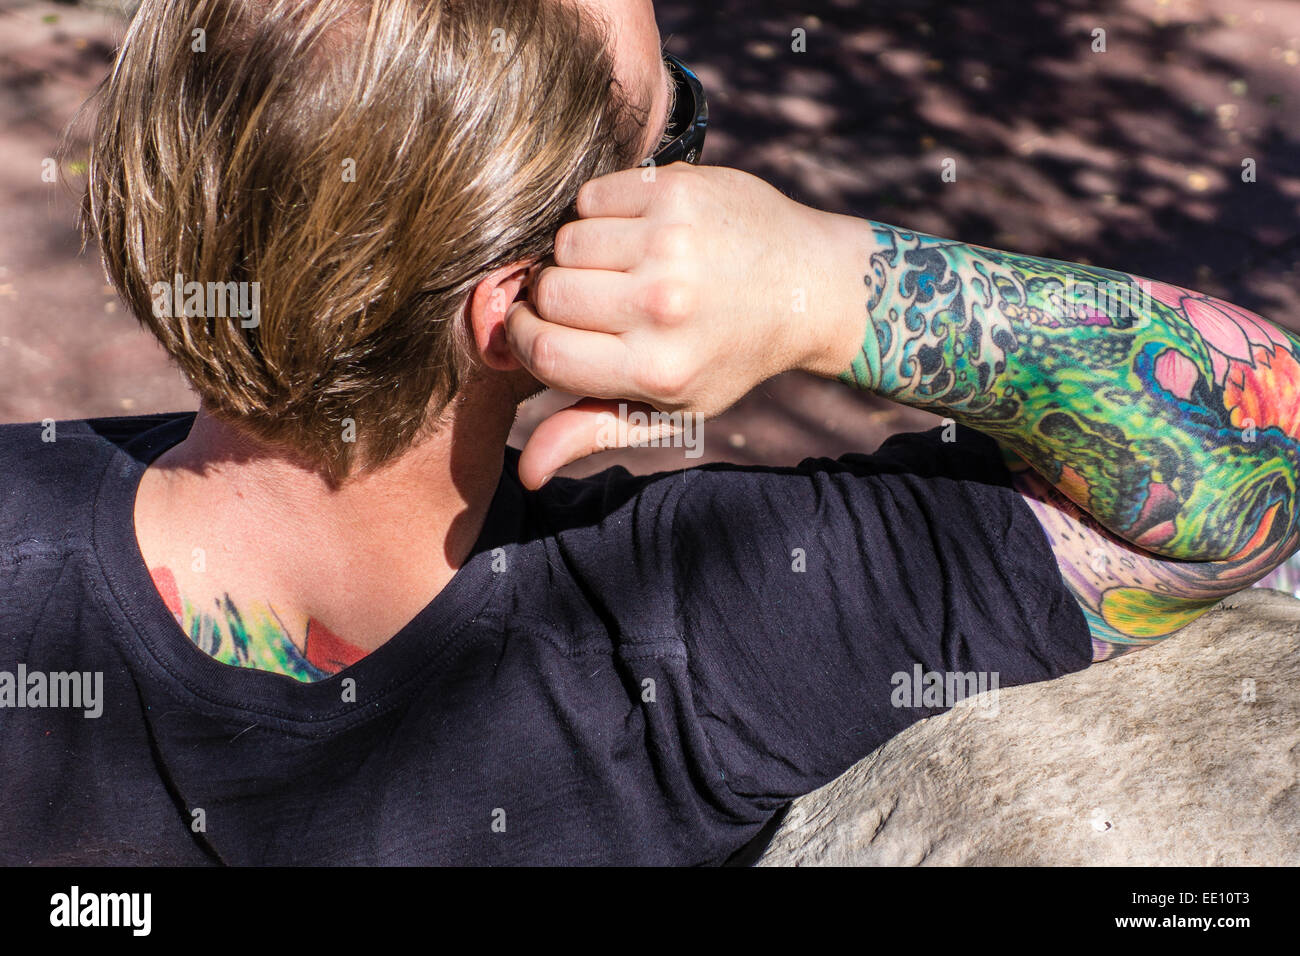 Un homme avec un bras tatoué très coloré et une partie de son dos repose sur un banc avec une vue de derrière de ses tatouages à Ojai, CA Banque D'Images